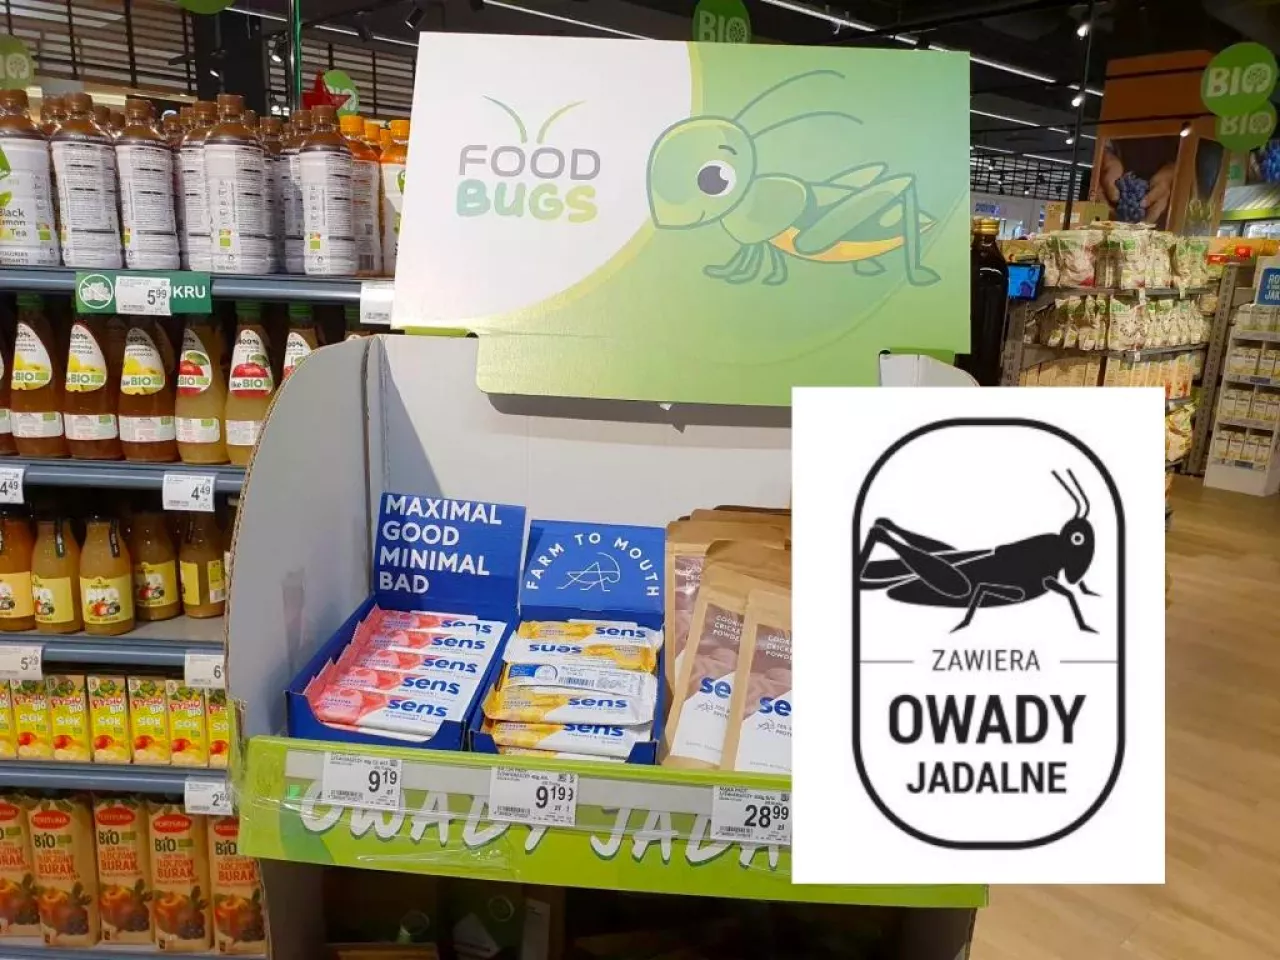 &lt;p&gt;Ministerstwo Rolnictwa chce oznaczenia produktów zawierających owady jadalne specjalnym znakiem graficznym (wiadomoscihandlowe.pl, MRiRW)&lt;/p&gt;